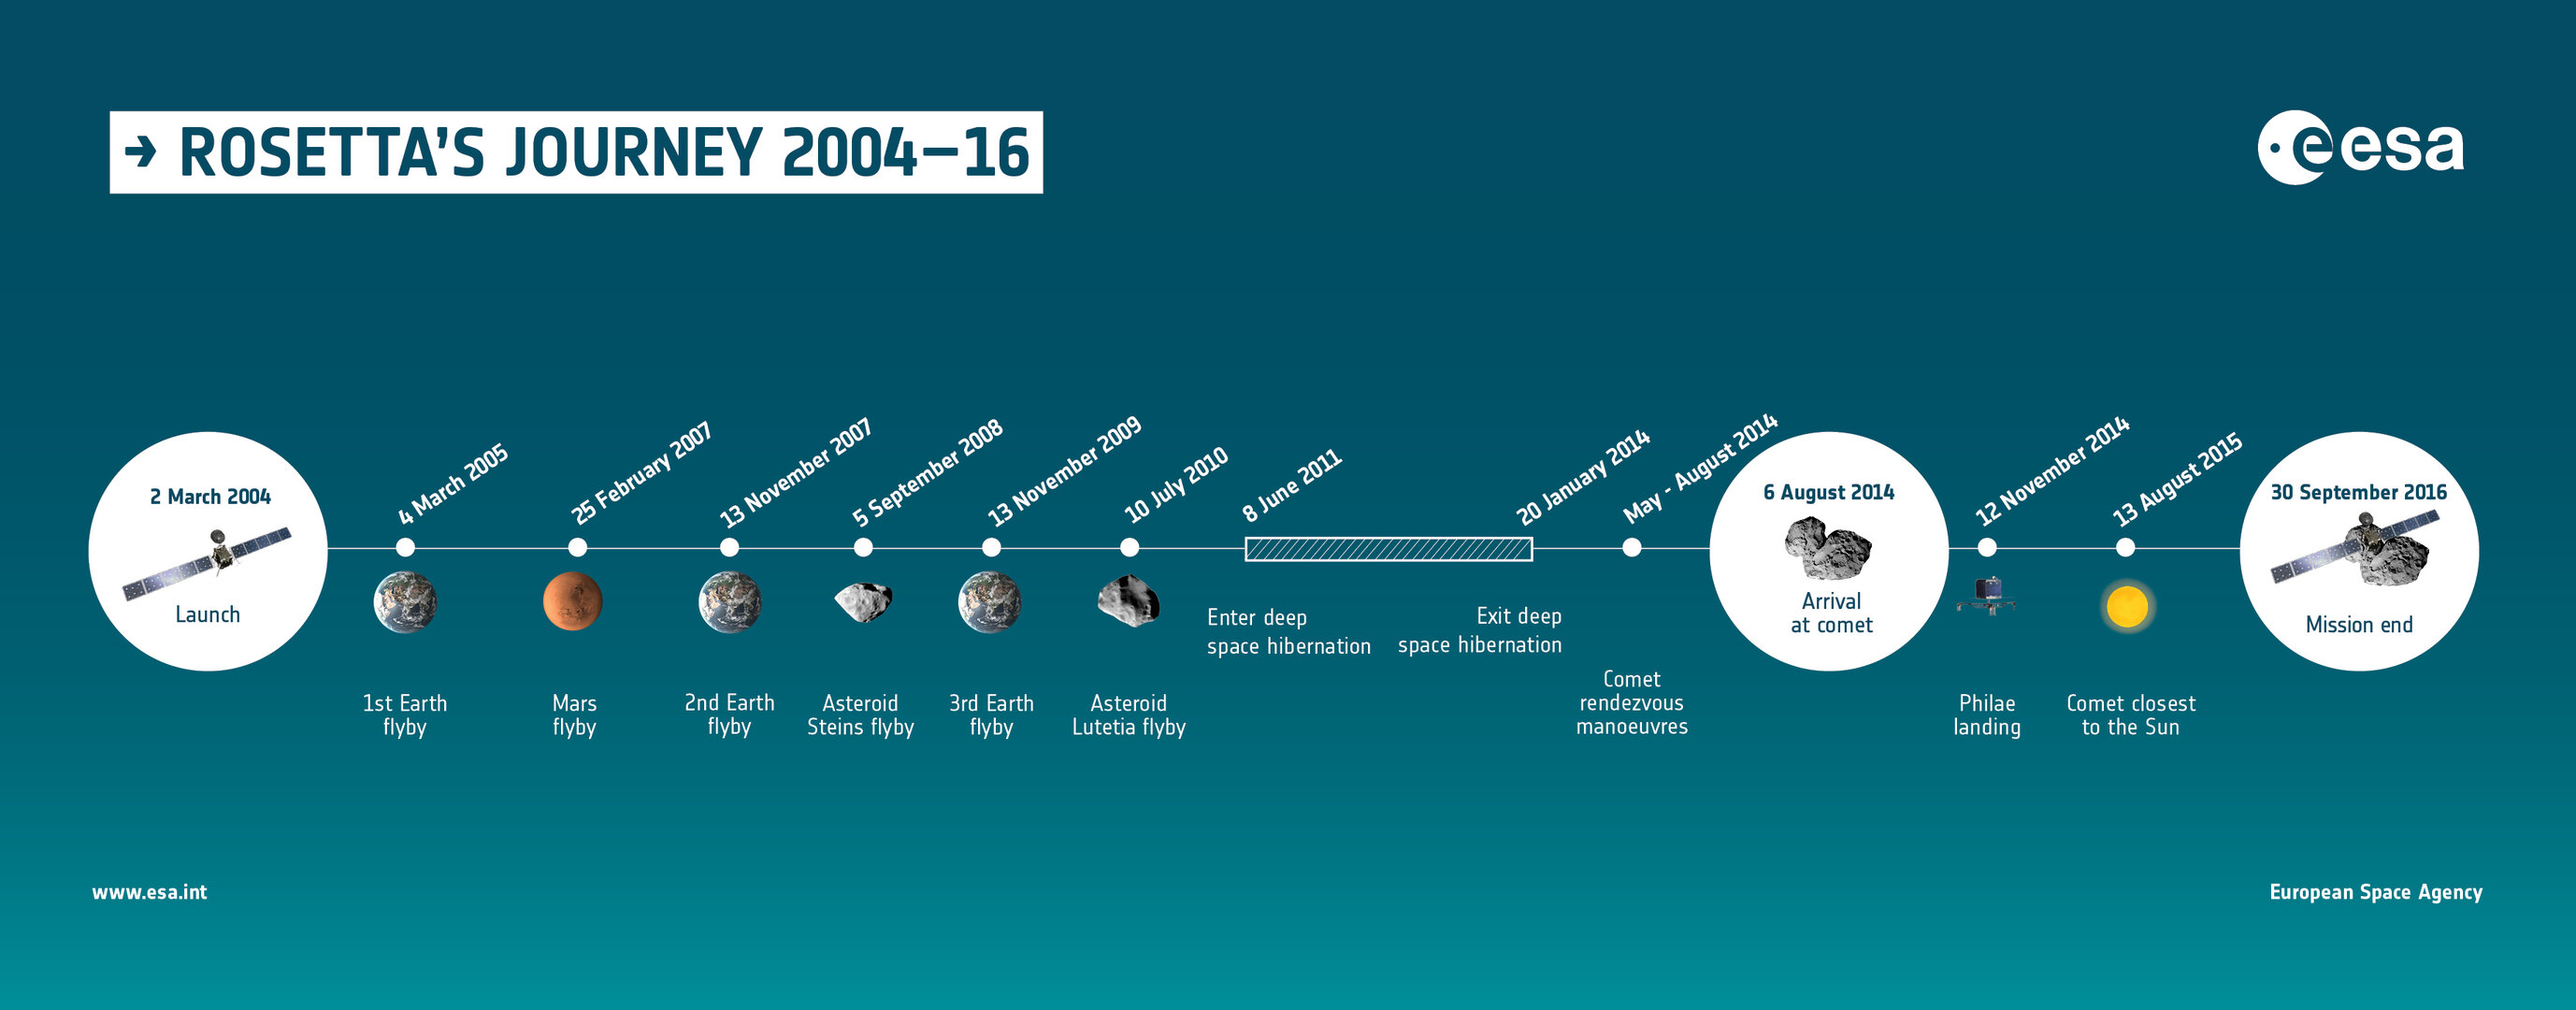 El viaje de Rosetta: 2004-16